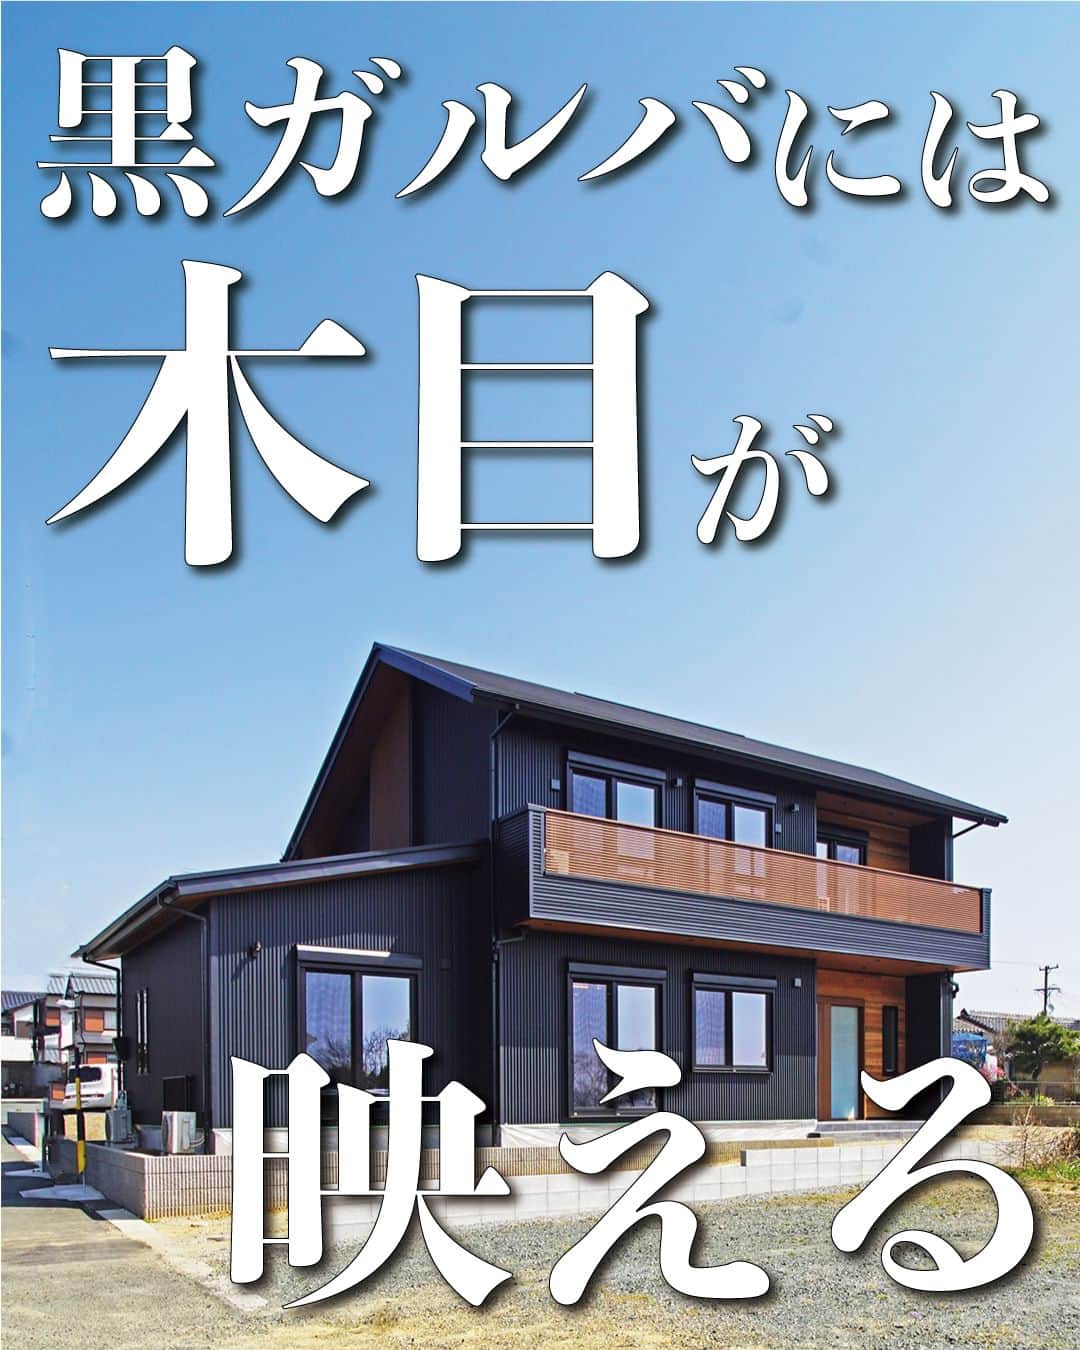 太陽住宅株式会社のインスタグラム：「太陽住宅の家 ▷▷▷ @taiyojutaku …………………………………………………………  本日は【黒ガルバには木目が映える！】がテーマです☺︎  こちらのお家、外観は人気No.1の黒のガルバリウムを採用。  そこに相性抜群の木目を軒天や外壁の一部に使うことでより、高級感や重厚感を演出しました☺︎  『黒ガルバ×木目』で、一気にオシャレ感アップです♪  ………………………………………………………… 残すもの・・・。 記録と、記憶と思い出と。 丈夫で長持ち、太陽住宅の家。 ………………………………………………………… ⁡ HPでもたくさんの #施工事例 を掲載しております😌✨  太陽住宅の家 詳しくはコチラから ▷▷▷ @taiyojutaku  気になることがあれば、いつでもコメント・DM📩お待ちしております🙋  ──────────────────────── 太陽住宅株式会社 愛知県豊橋市三本木町字元三本木18-5 0120-946-265 ────────────────────────  #黒ガルバ #黒ガルバの家 #ガルバリウムの家 #ガルバリウム鋼板 #ガルバの家 #木目調軒天 #木目調サイディング #木目調ドア #外観オシャレ #太陽住宅 #豊川土地 #豊橋土地 #豊橋注文住宅 #豊川注文住宅 #工務店がつくる家 #注文住宅のかっこいい工務店 #豊橋家づくり #豊川家づくり #マイホーム計画 #土地探しからの注文住宅 #土地探しから #建売に見えない建売 #自由設計 #子育てママ #太陽の家 #暮らしを楽しむ #豊橋建売 #豊川建売」